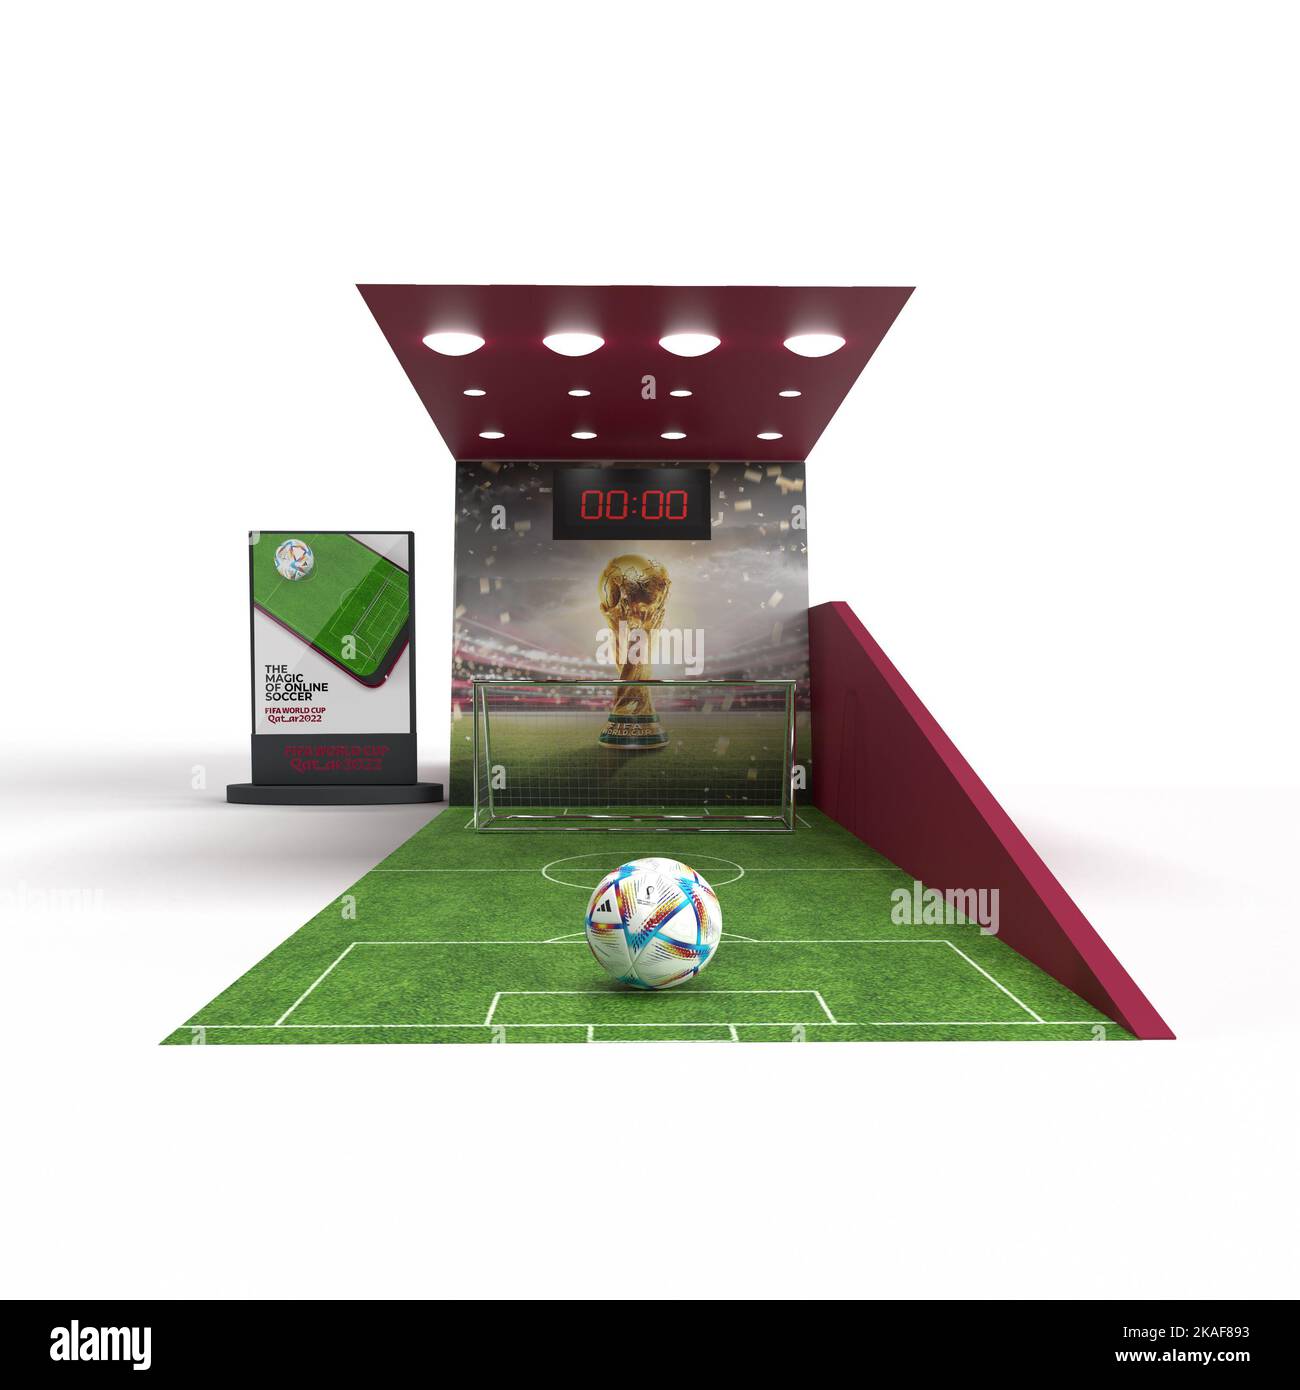 fifa Fußball-Weltmeisterschaft 2022 katar. Mall Activity Football Kiosk 3D Rendering Illustration. Stockfoto